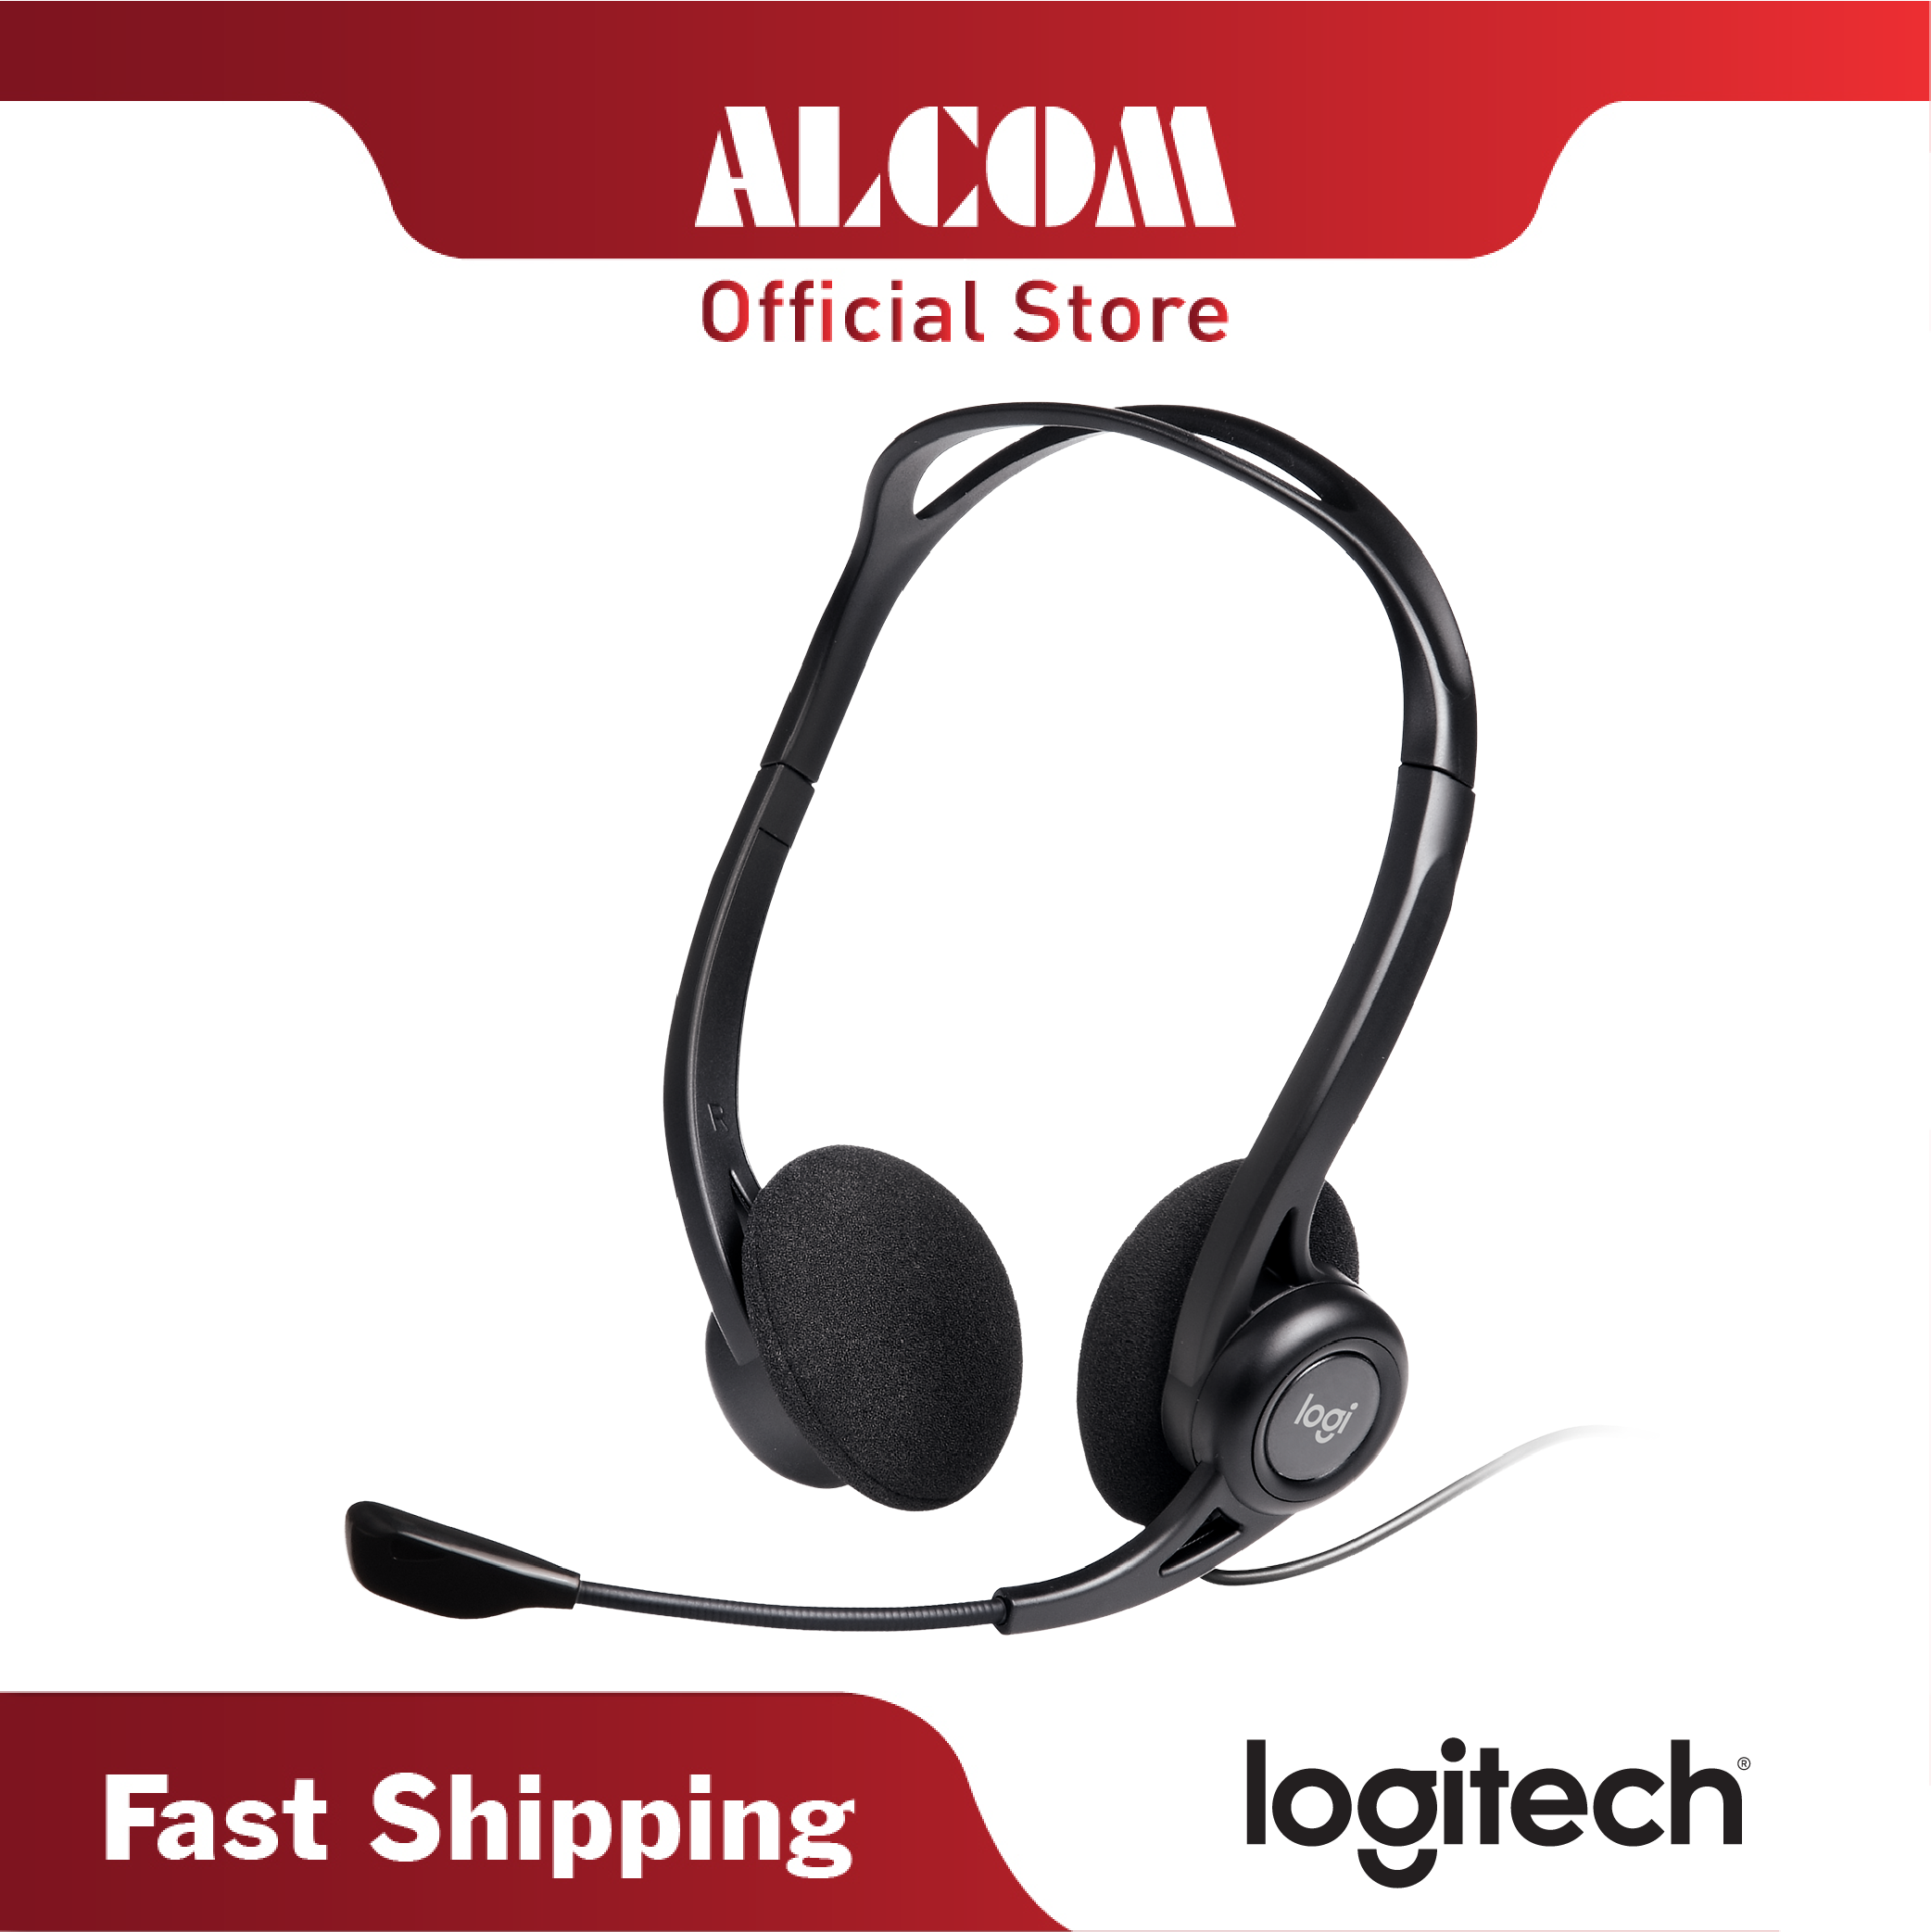 Logitech H370 Headset 